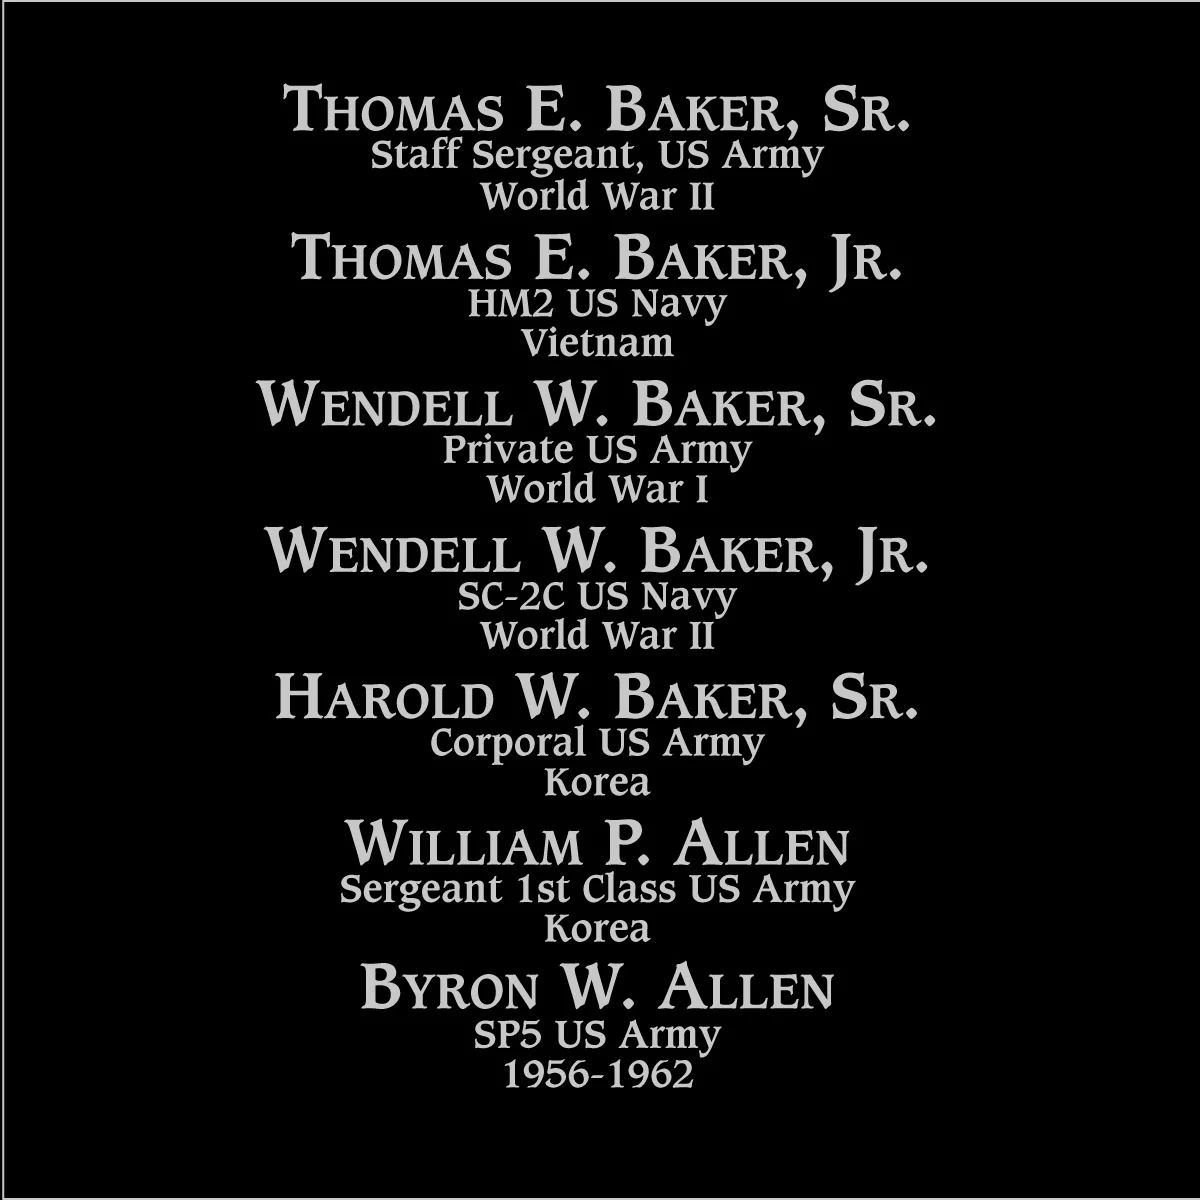 Thomas E. Baker sr